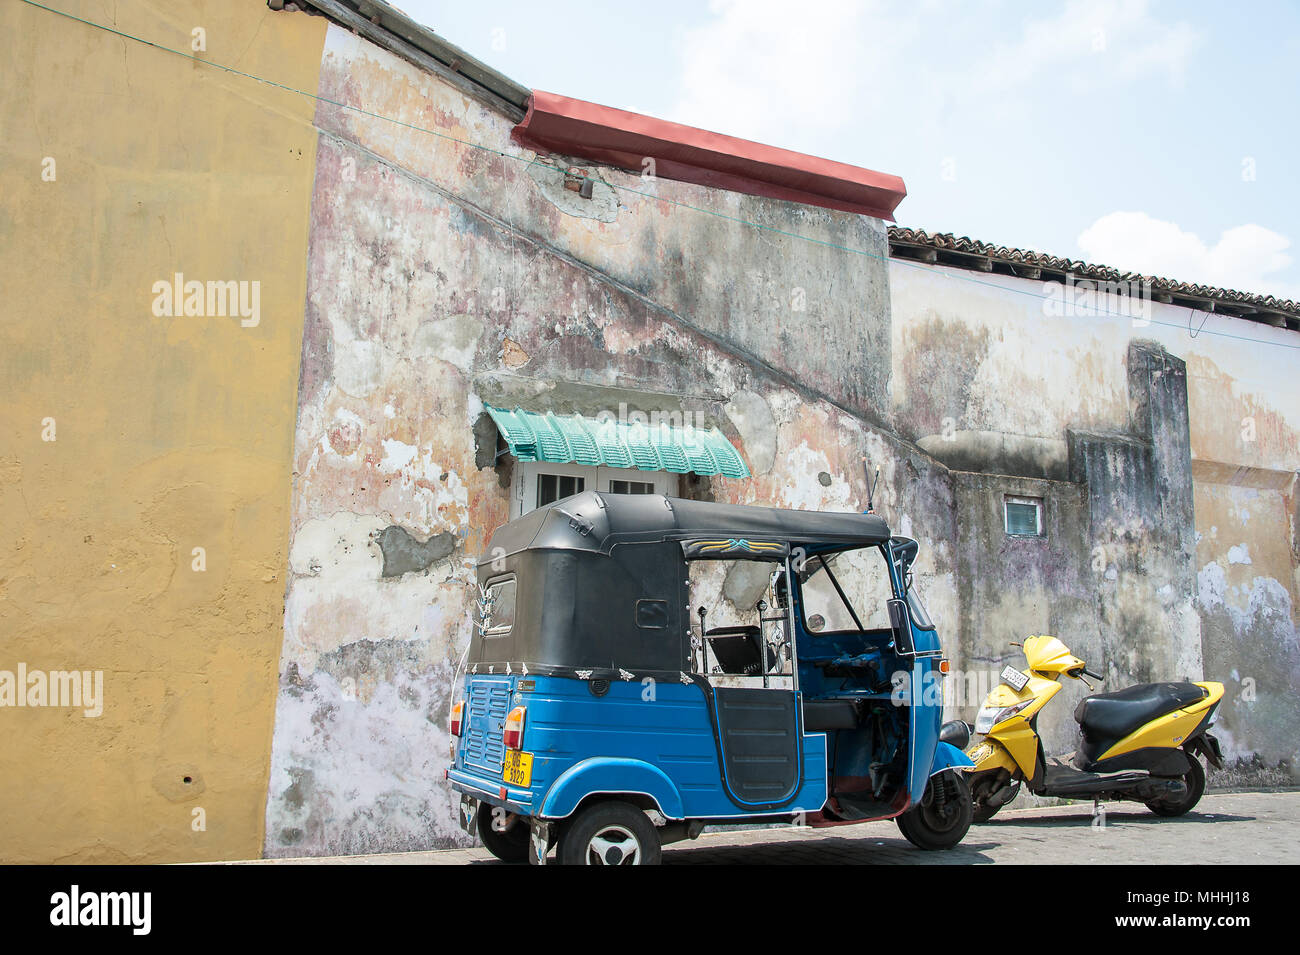 Galle, Sri Lanka: Galle Fort Straßenbild. Typische Architektur, bunte Stuck Wand, mit Tuk-Tuk und Motorroller im Vordergrund Stockfoto